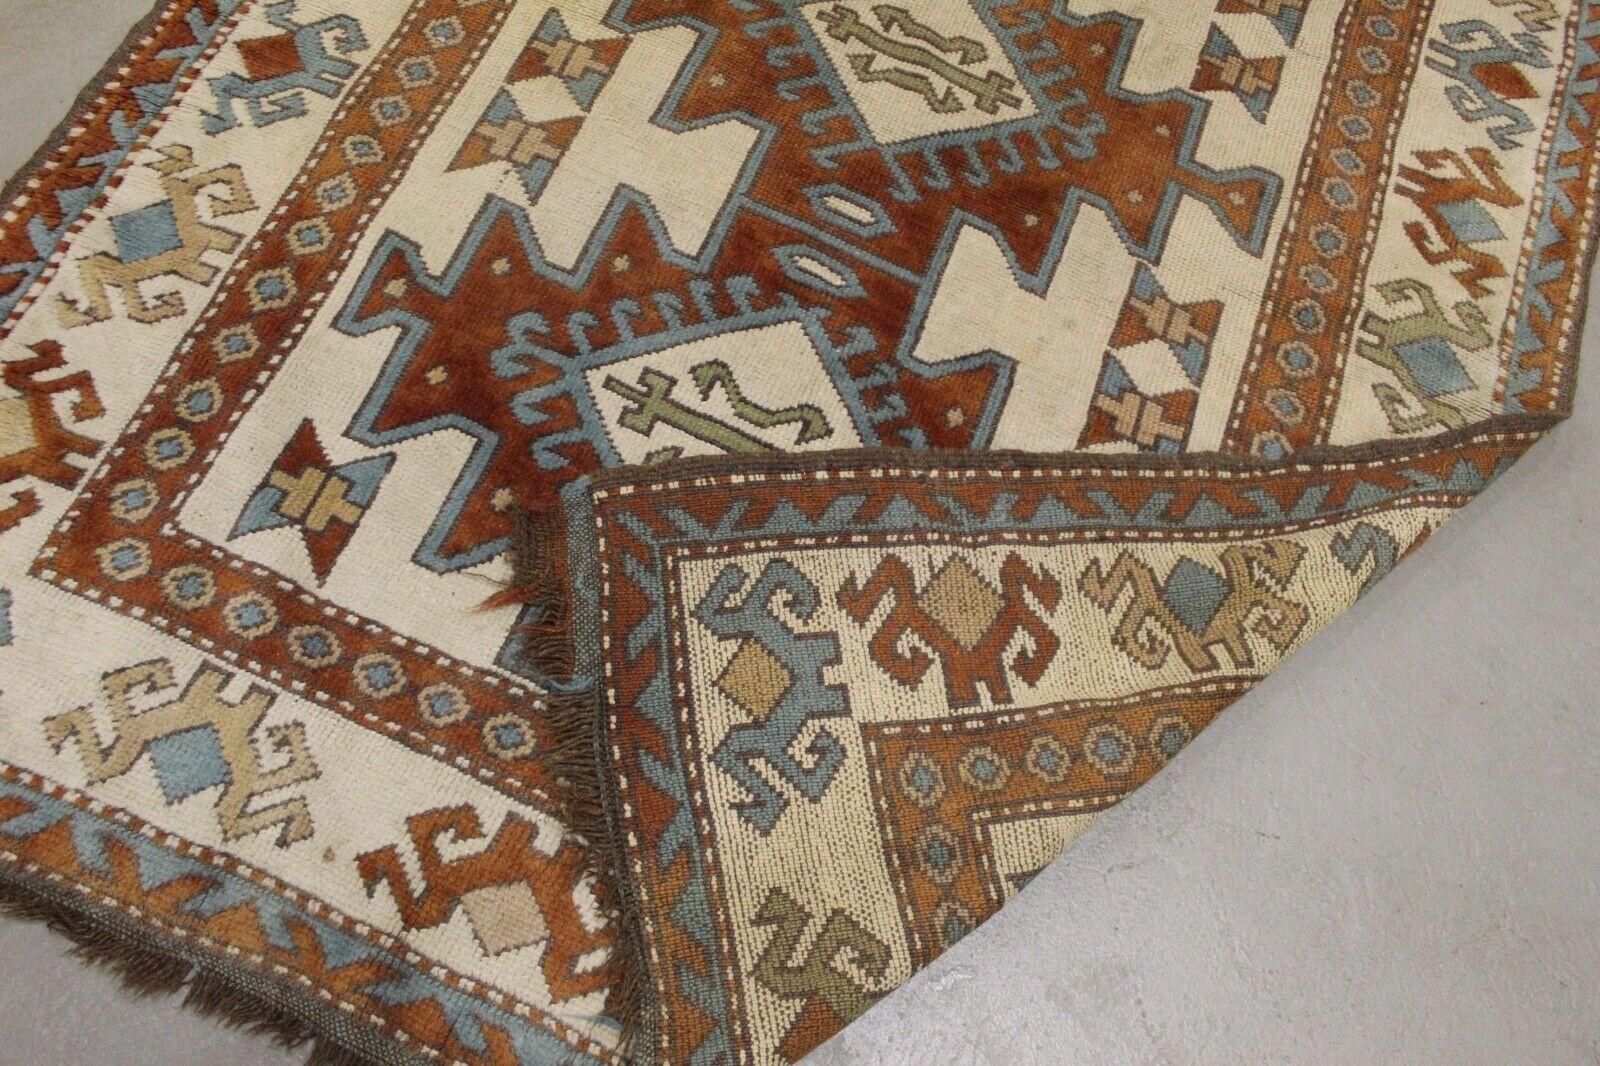 Verschönern Sie Ihren Wohnbereich mit dem zeitlosen Charme dieses handgefertigten türkischen Kars-Teppichs im Vintage-Stil aus den 1970er Jahren. Mit den Maßen 4,4' x 6' bietet dieser Teppich ein geometrisches Design, das jedem Raum einen Hauch von